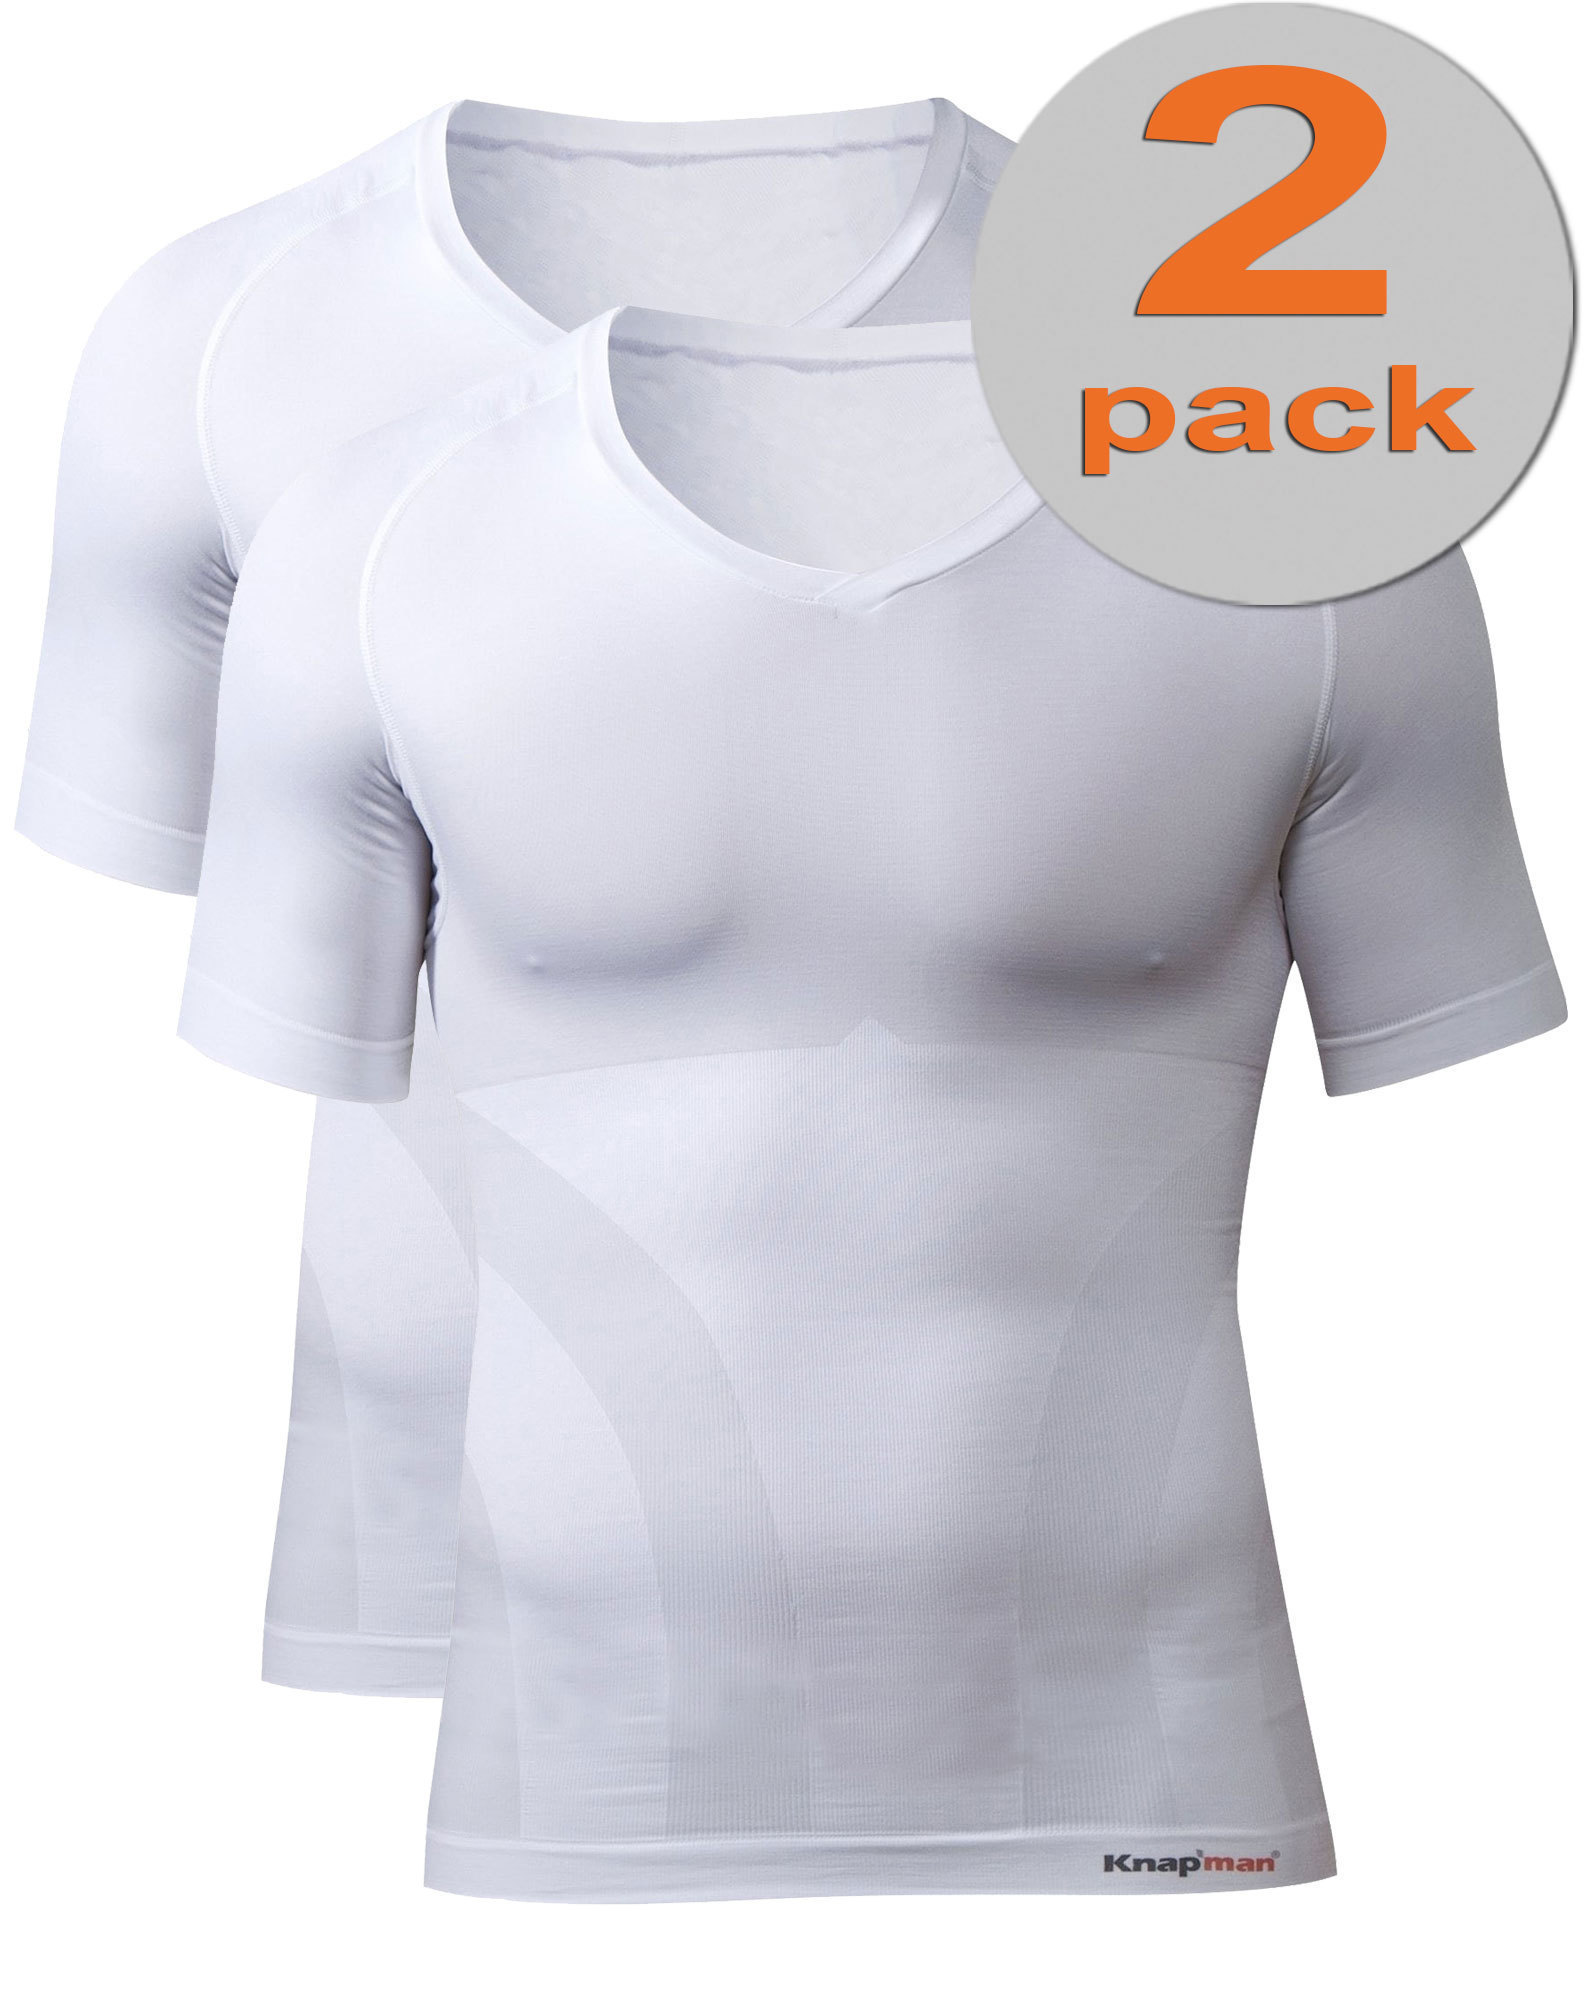 TWOPACK | Knap'man Compression Shirt 2.0 V-neck White